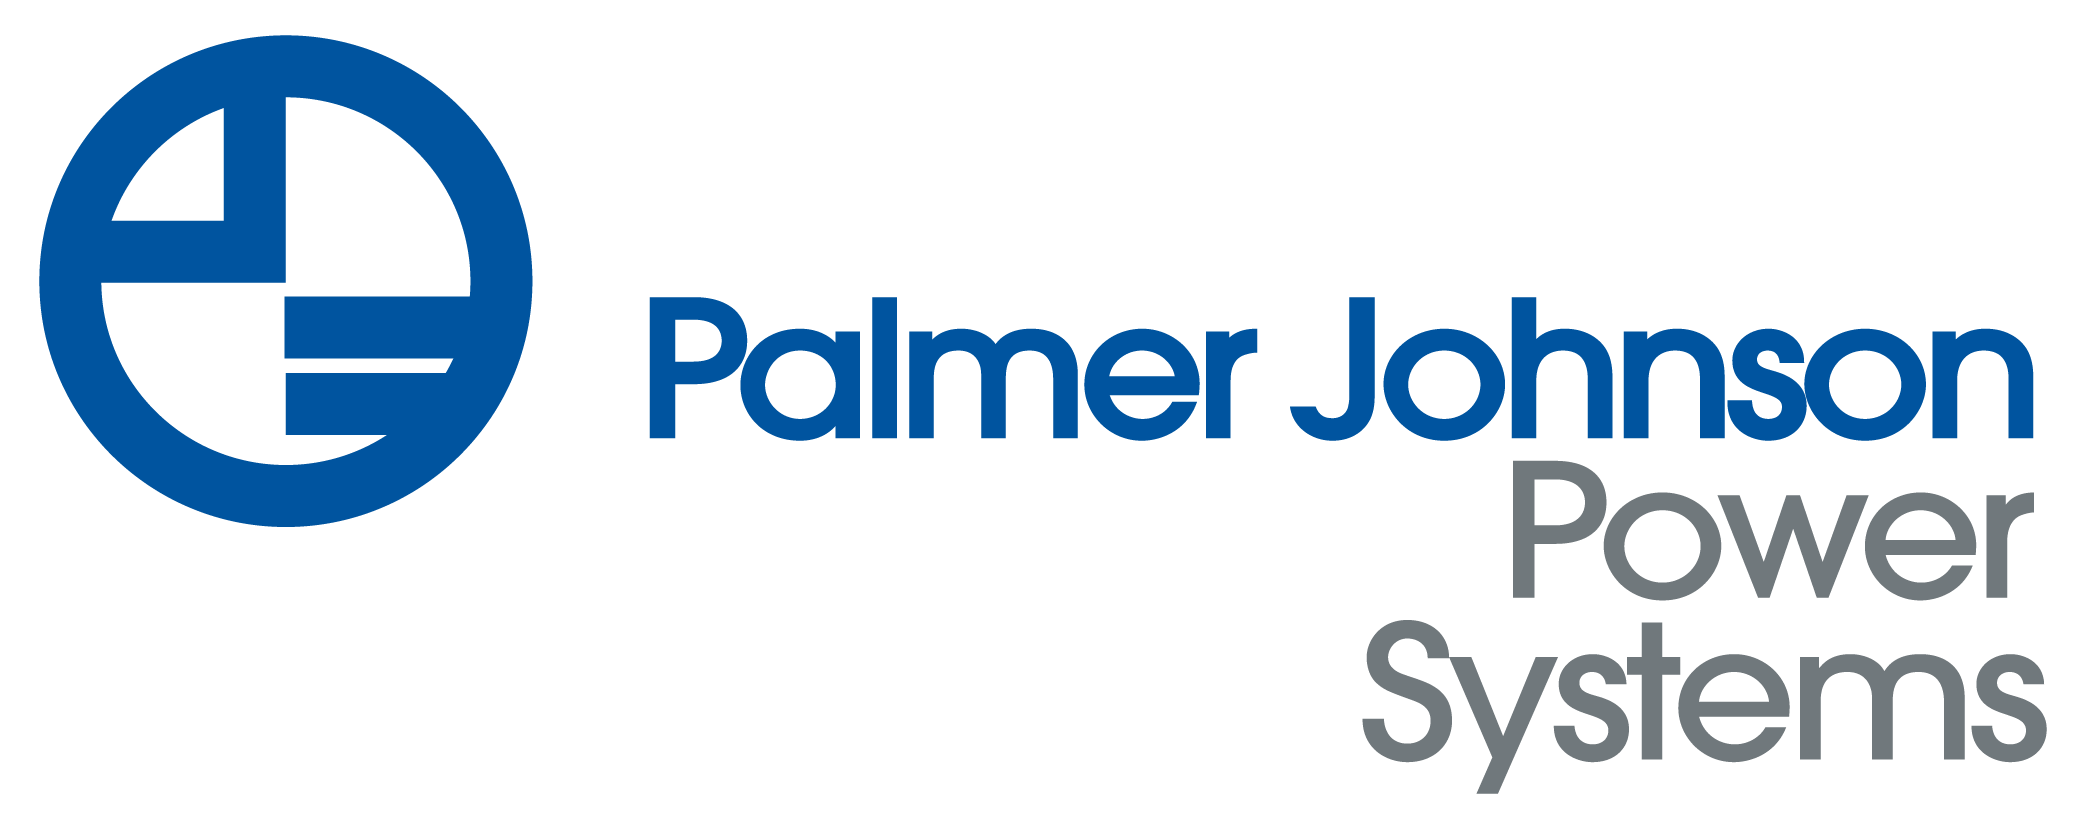 Palmer Johnson Power Systems Company Logo